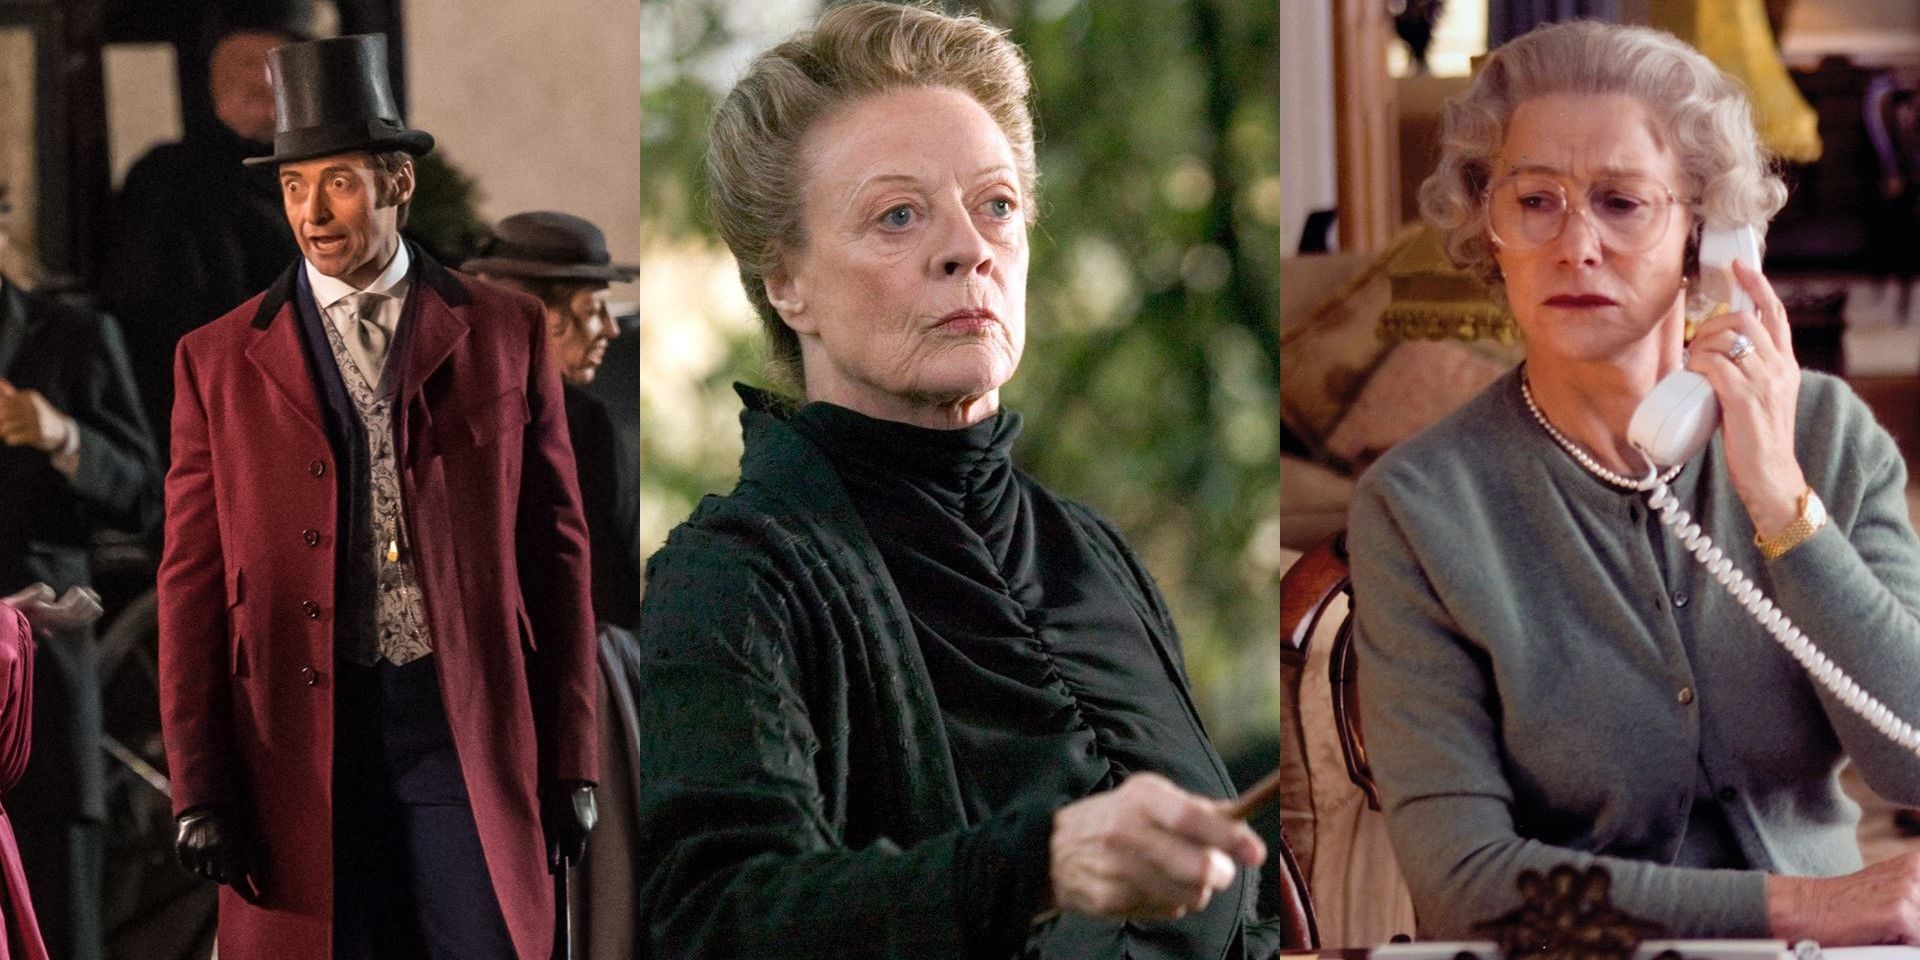 Hugh Jackman, Maggie Smith, Helen Mirren in 3 split images